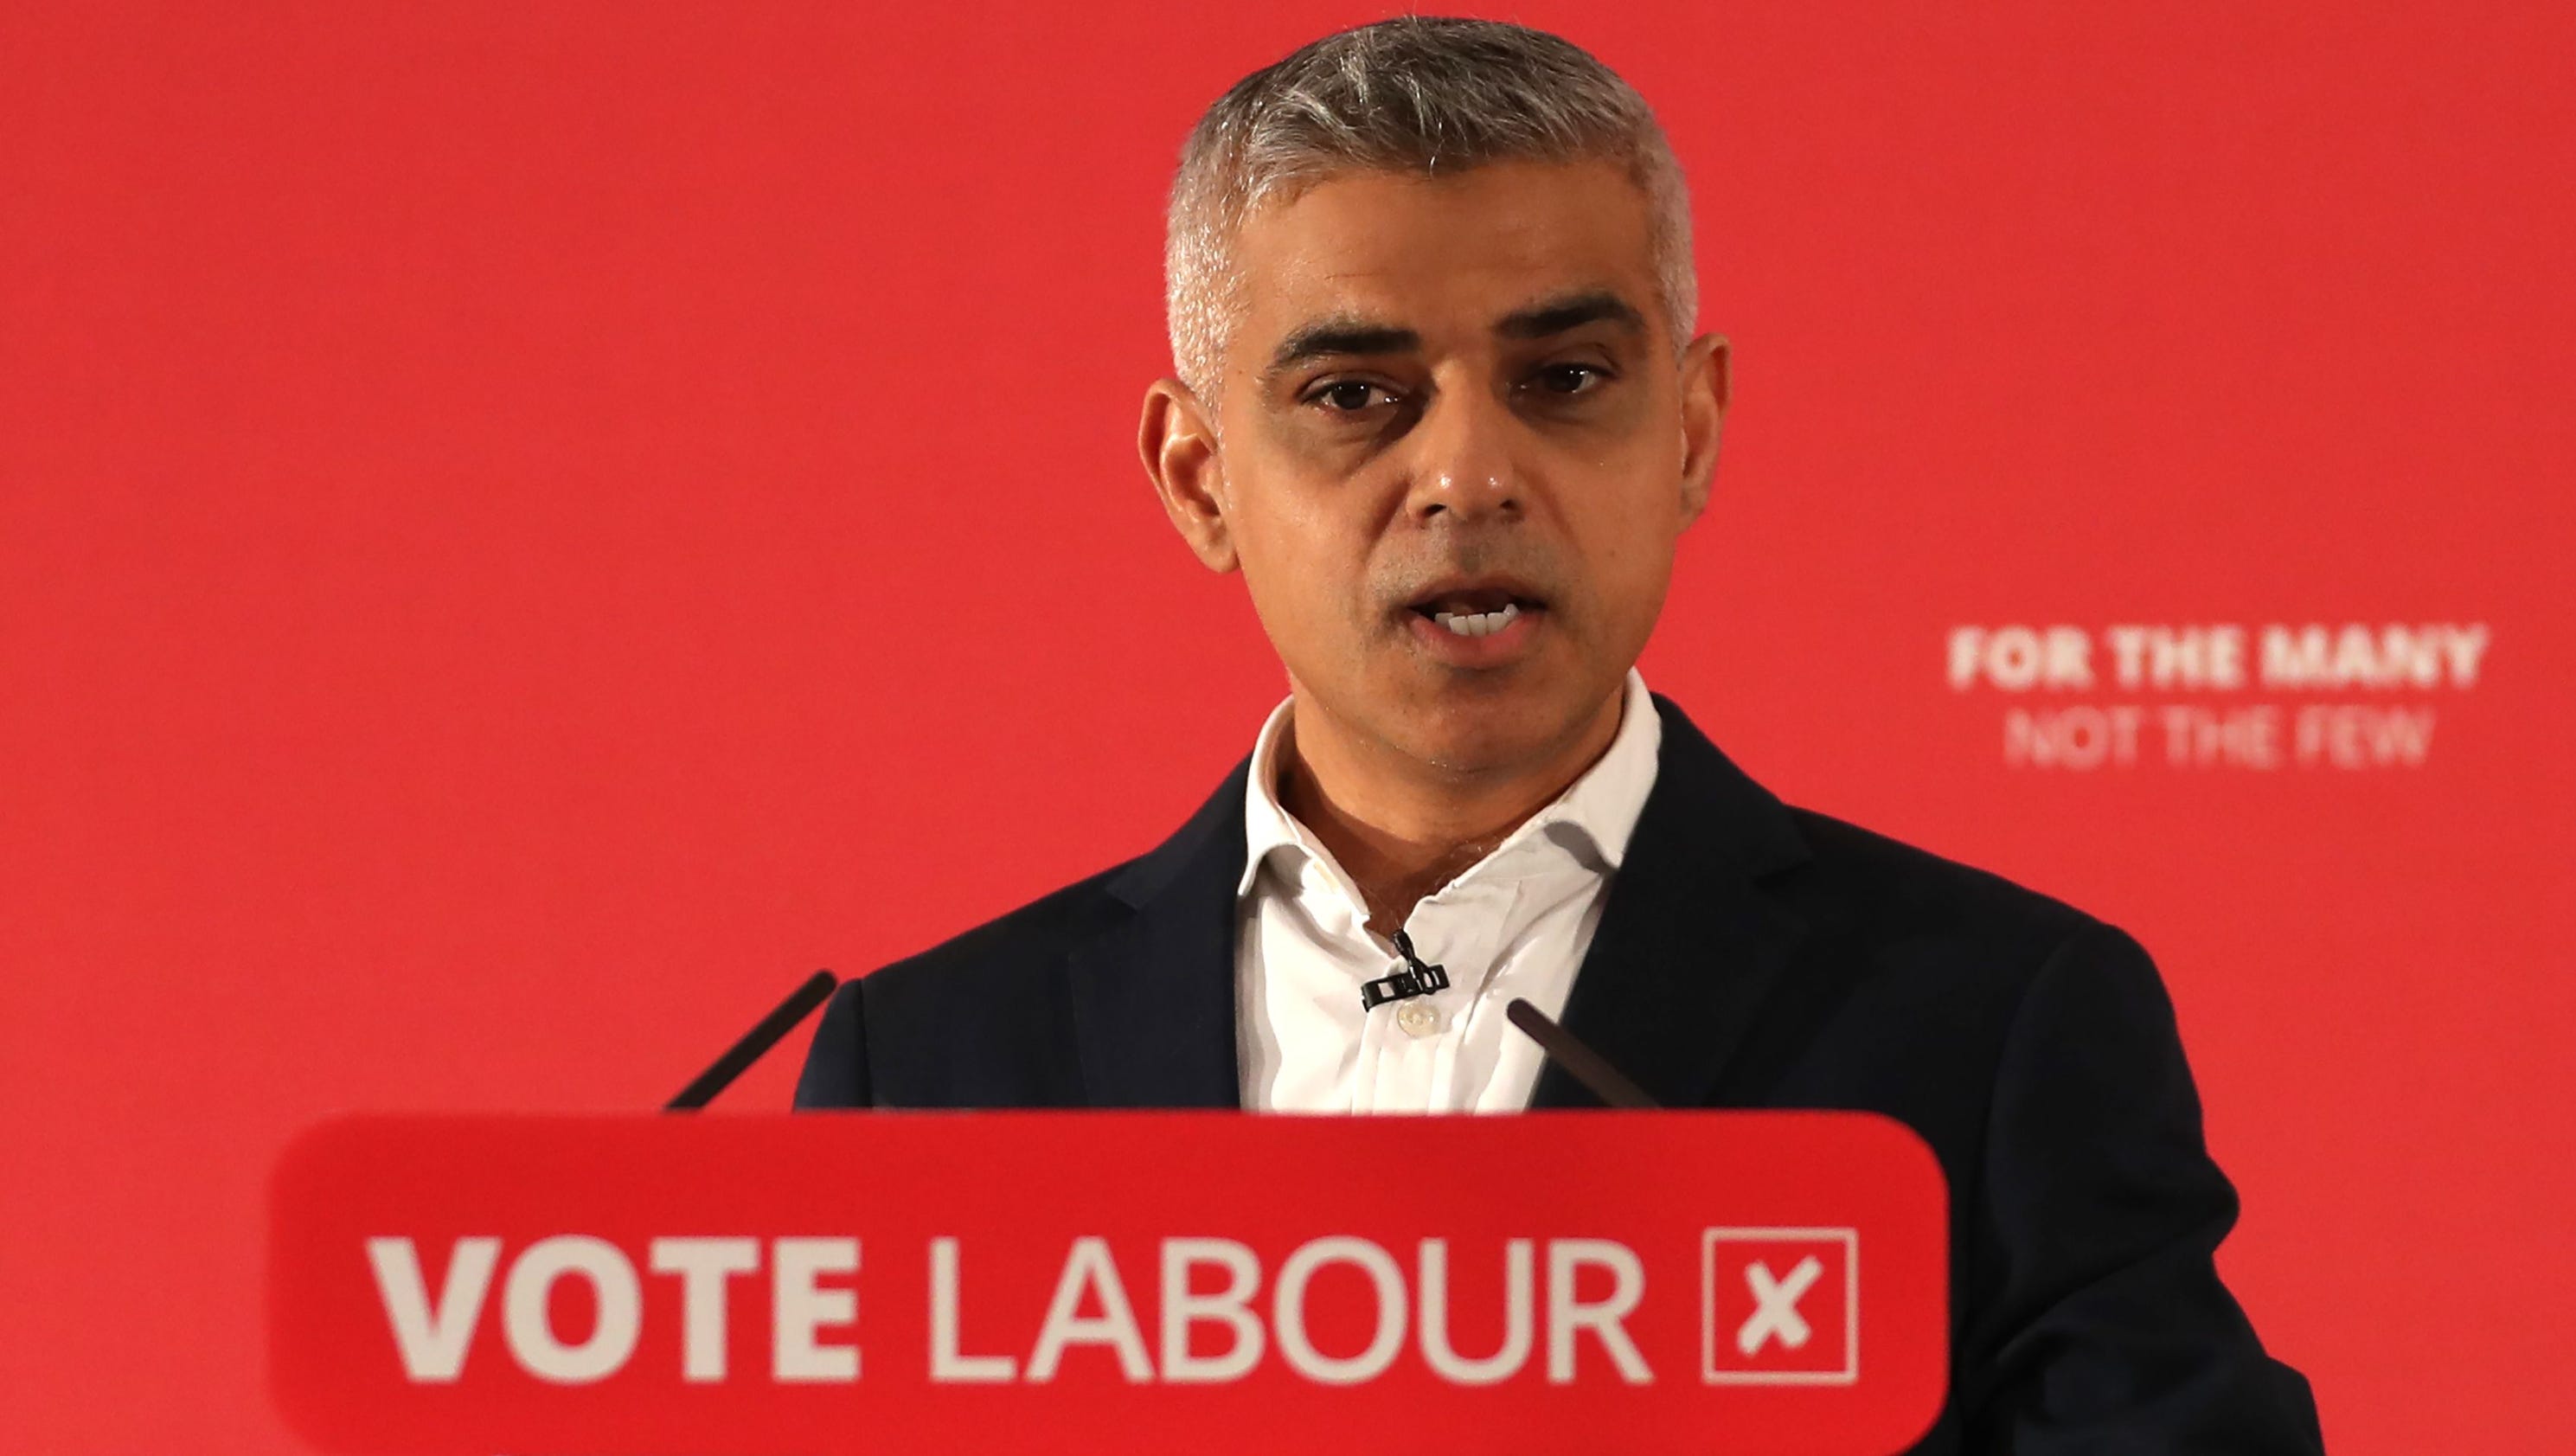 London Mayor Sadiq Khan calls for knife control amid homicide surge